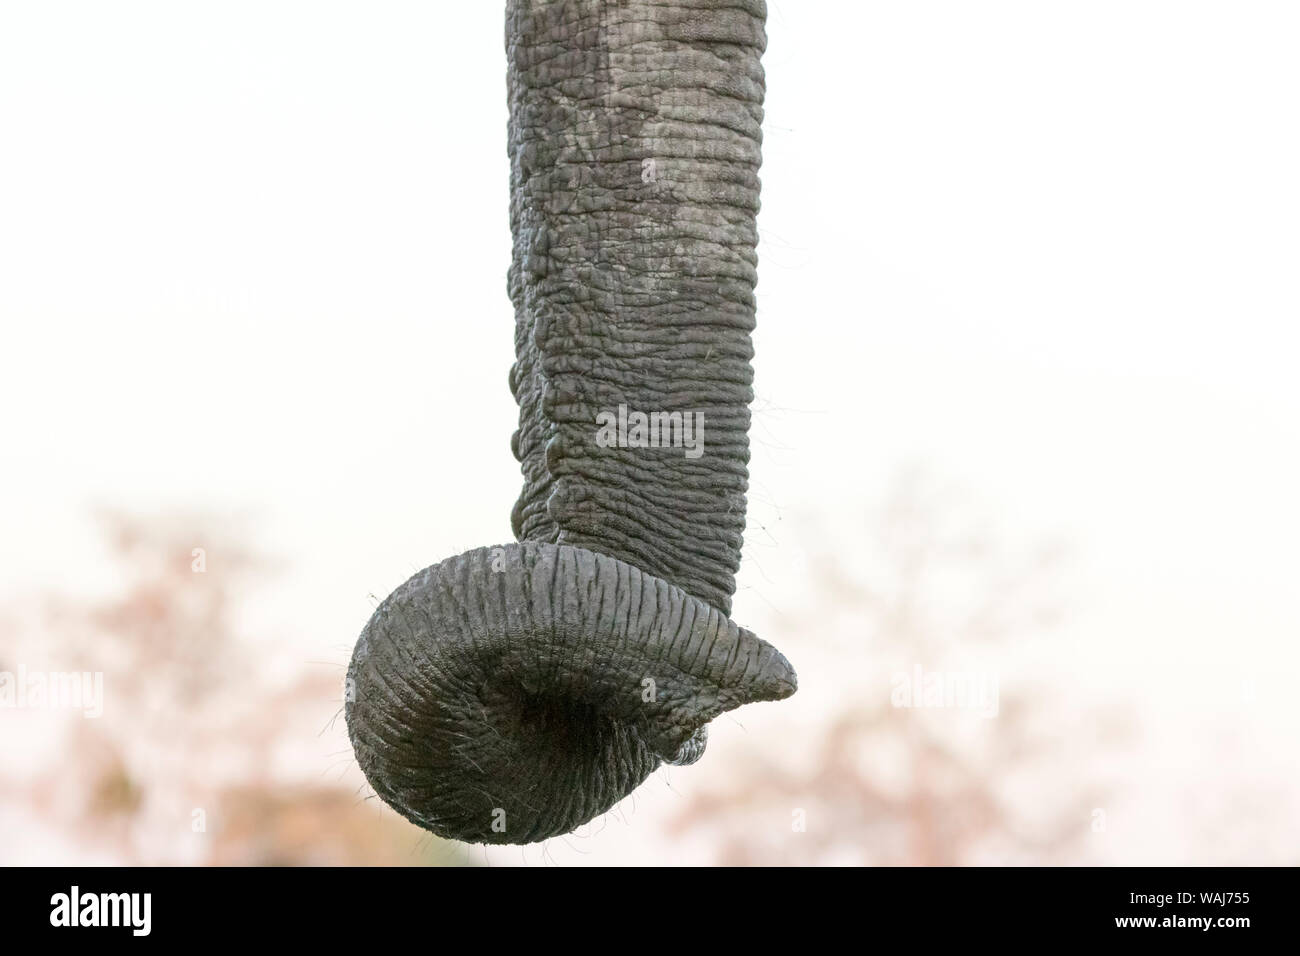 L'Afrique, Botswana, Senyati Safari Camp. Close-up de elephant trunk. En tant que crédit : Wendy Kaveney Jaynes / Galerie / DanitaDelimont.com Banque D'Images